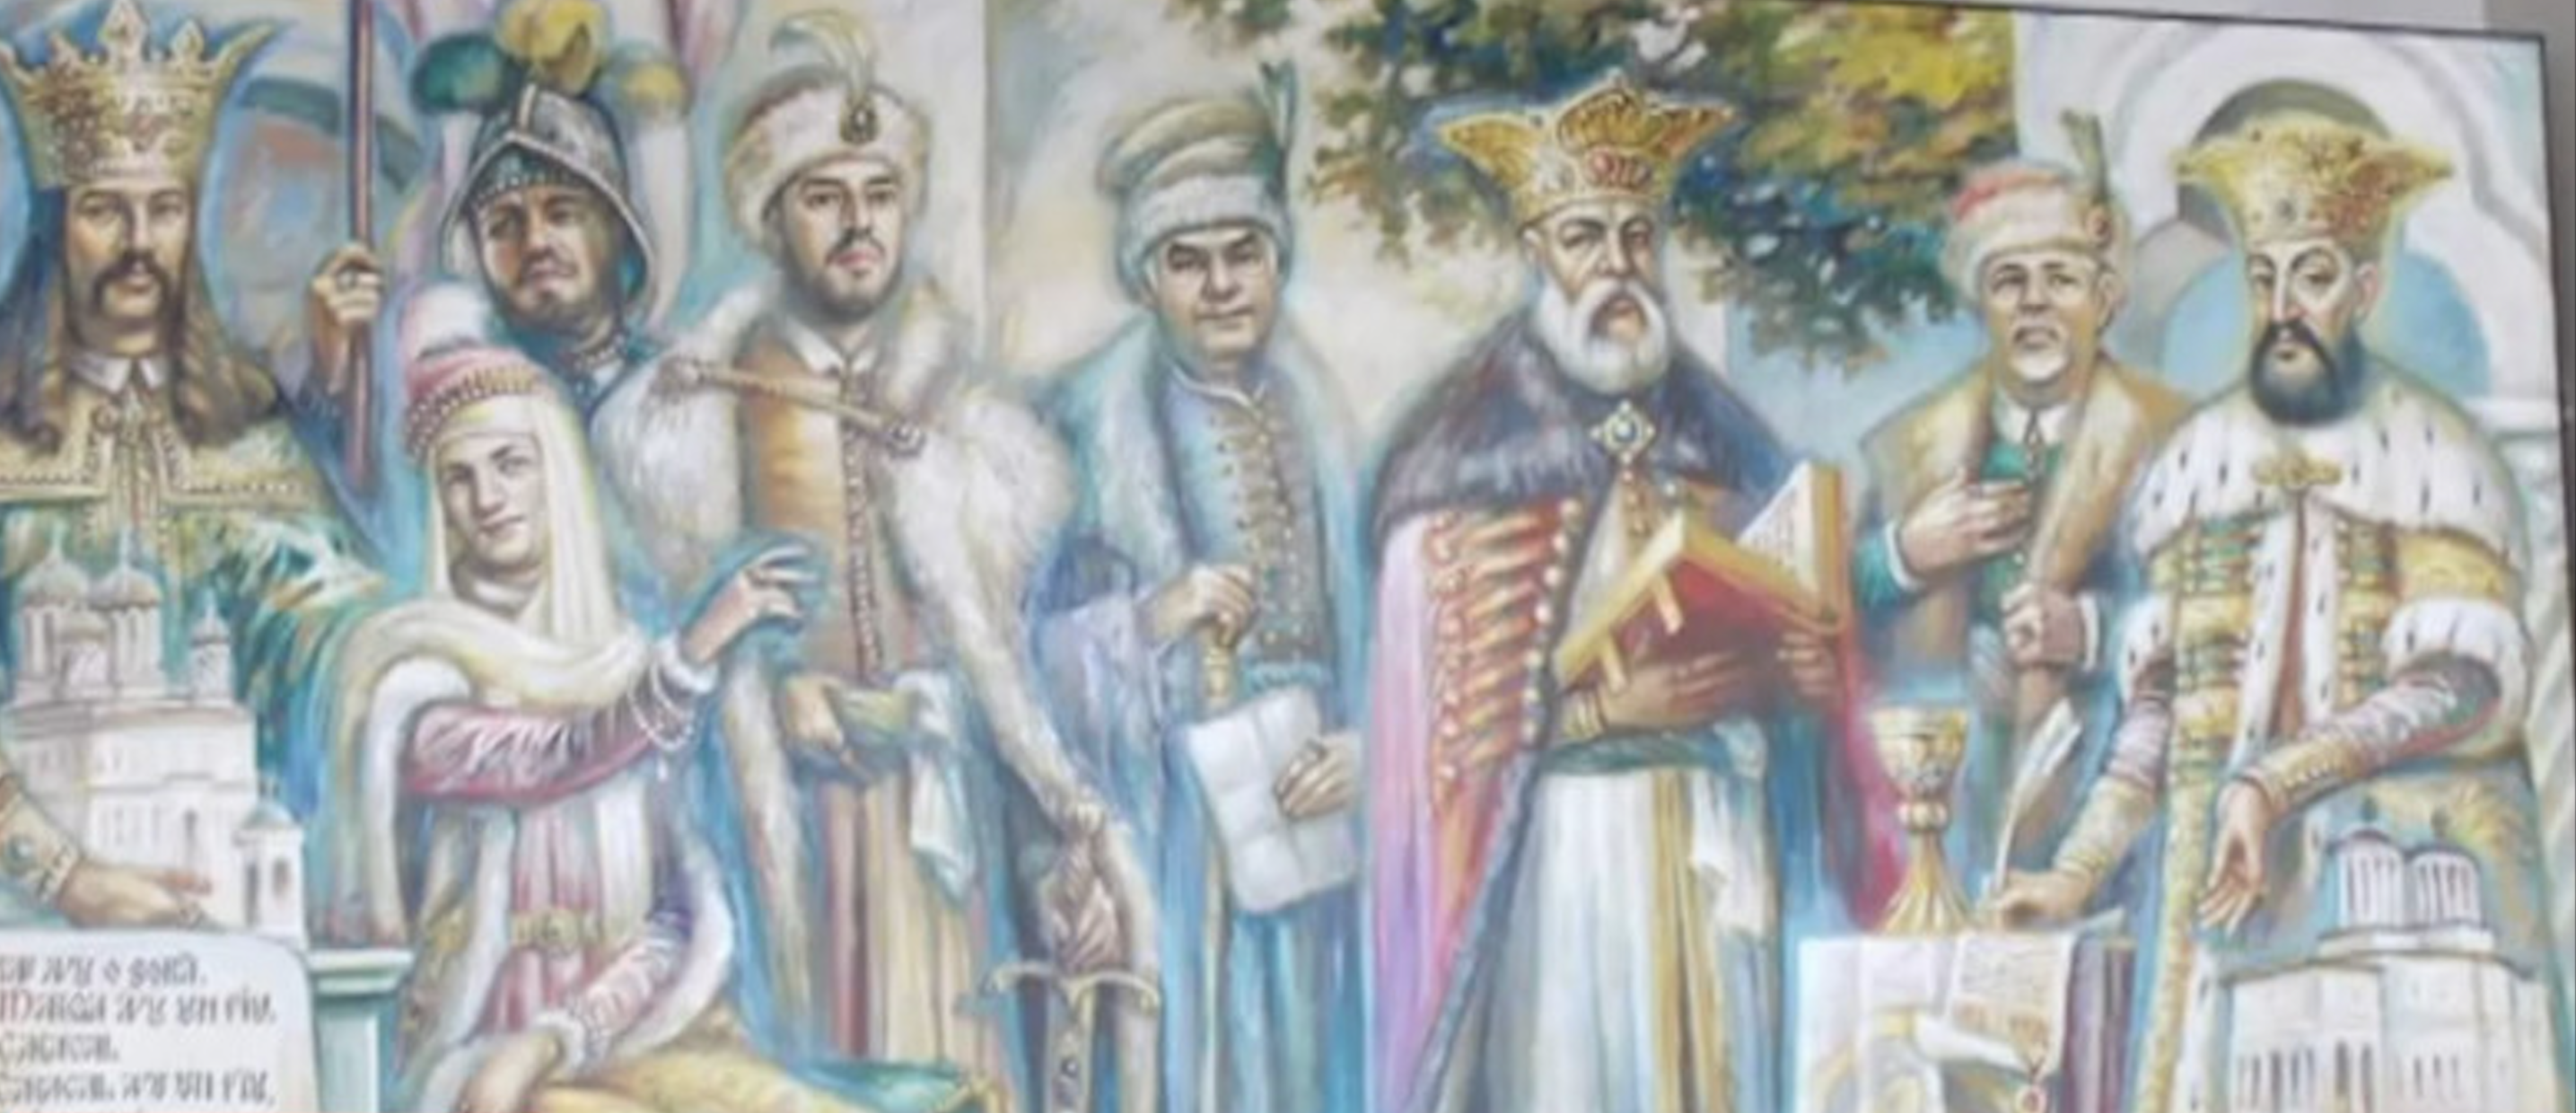 Primarul Dordulea și familia sa, într-un tablou alături de Neagoe Basarab și Constantin Brâncoveanu